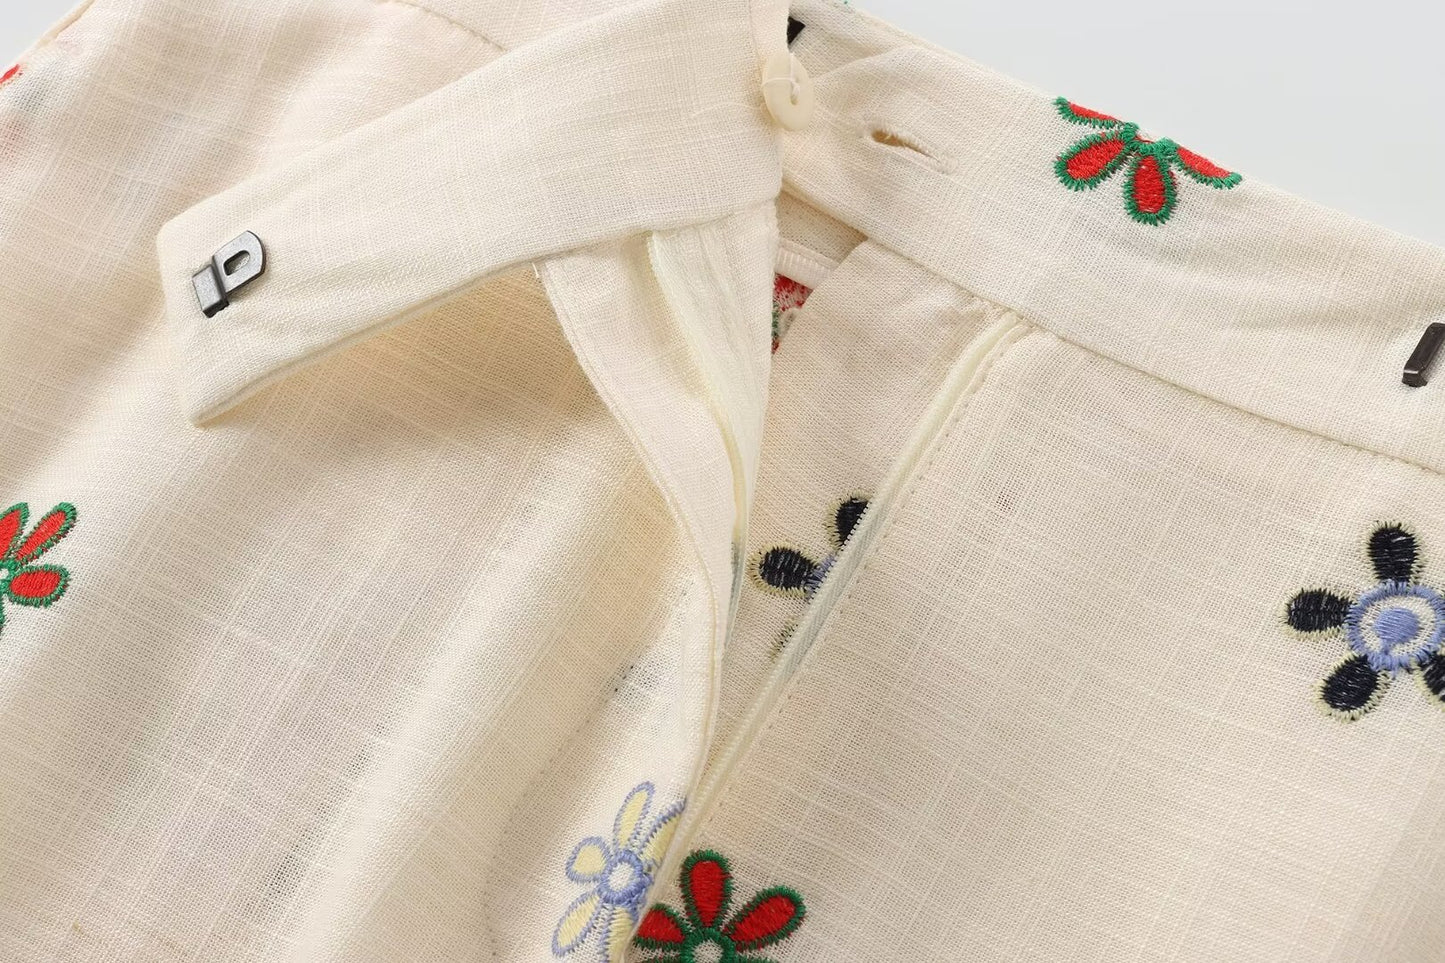 Ropa de mujer Camisa bordada floral de verano Traje culottes bordados